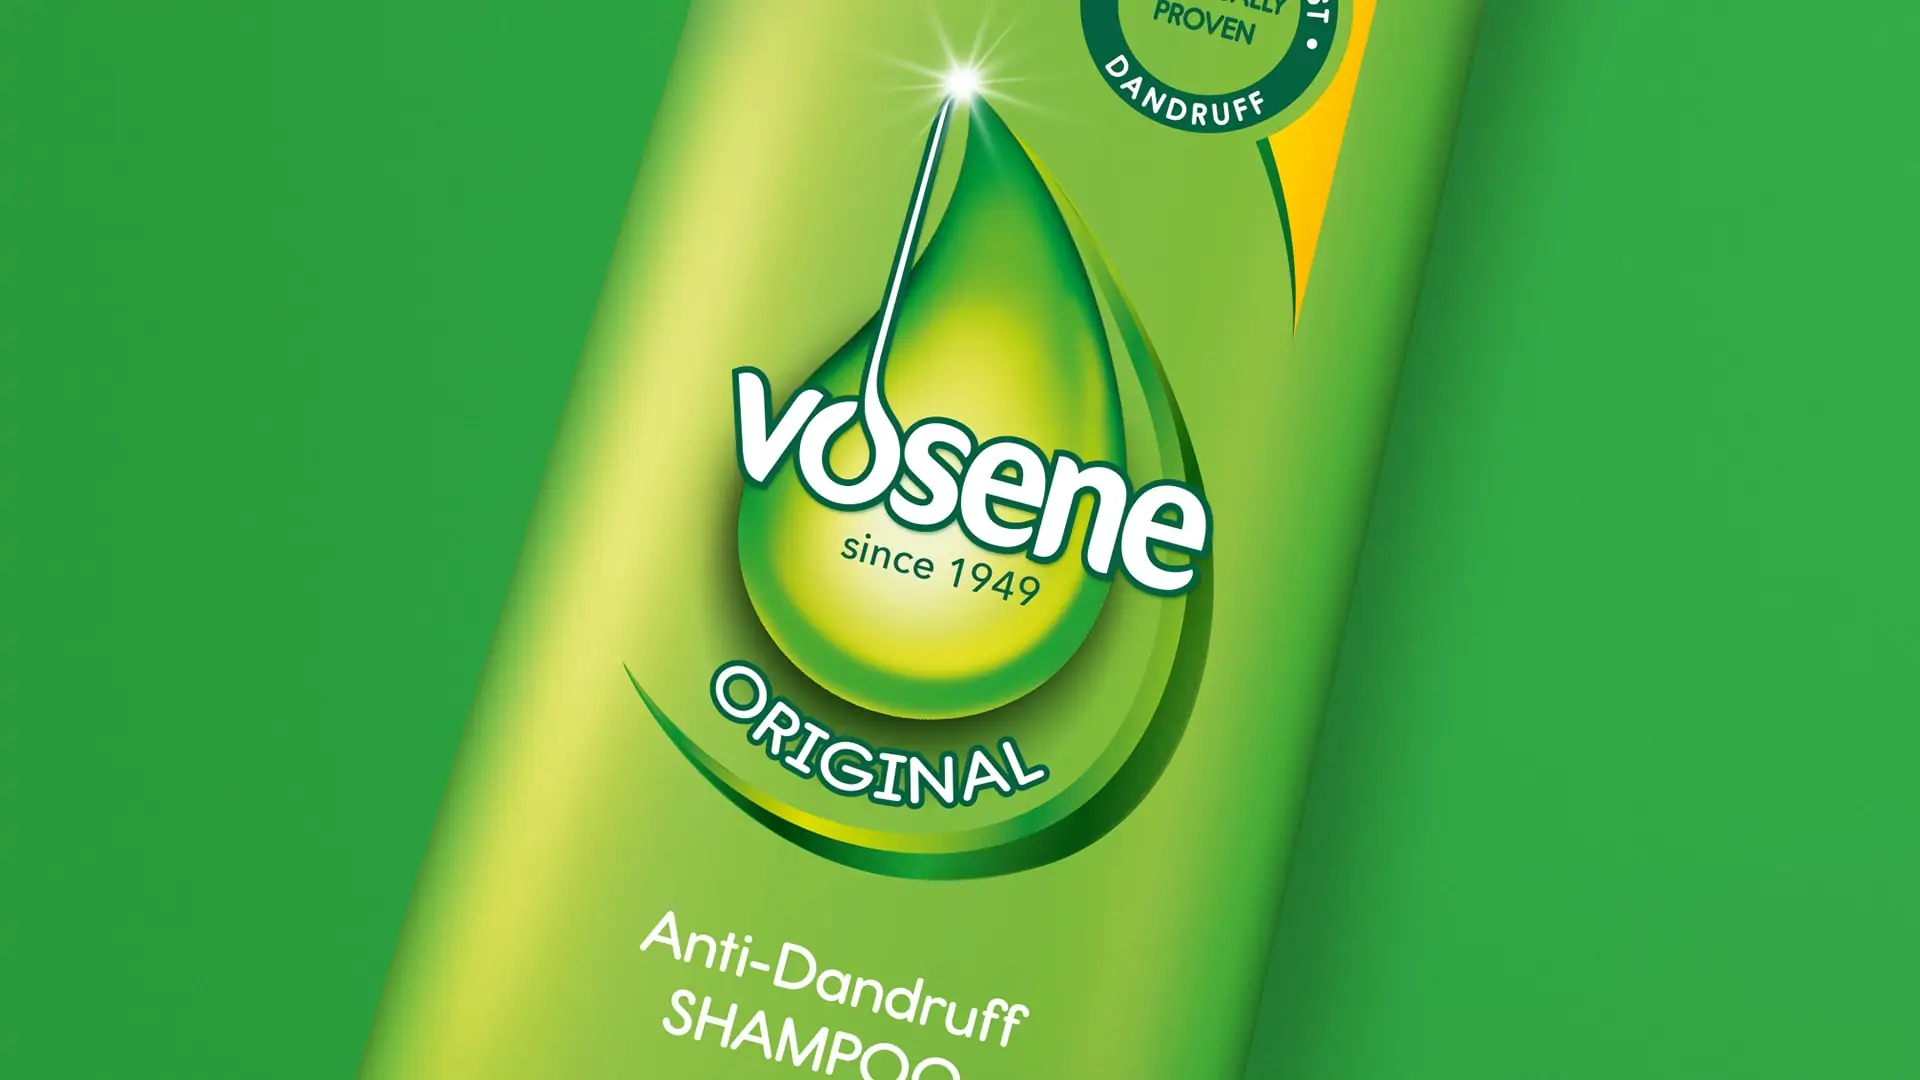 vosene shampoo branding and packaging design